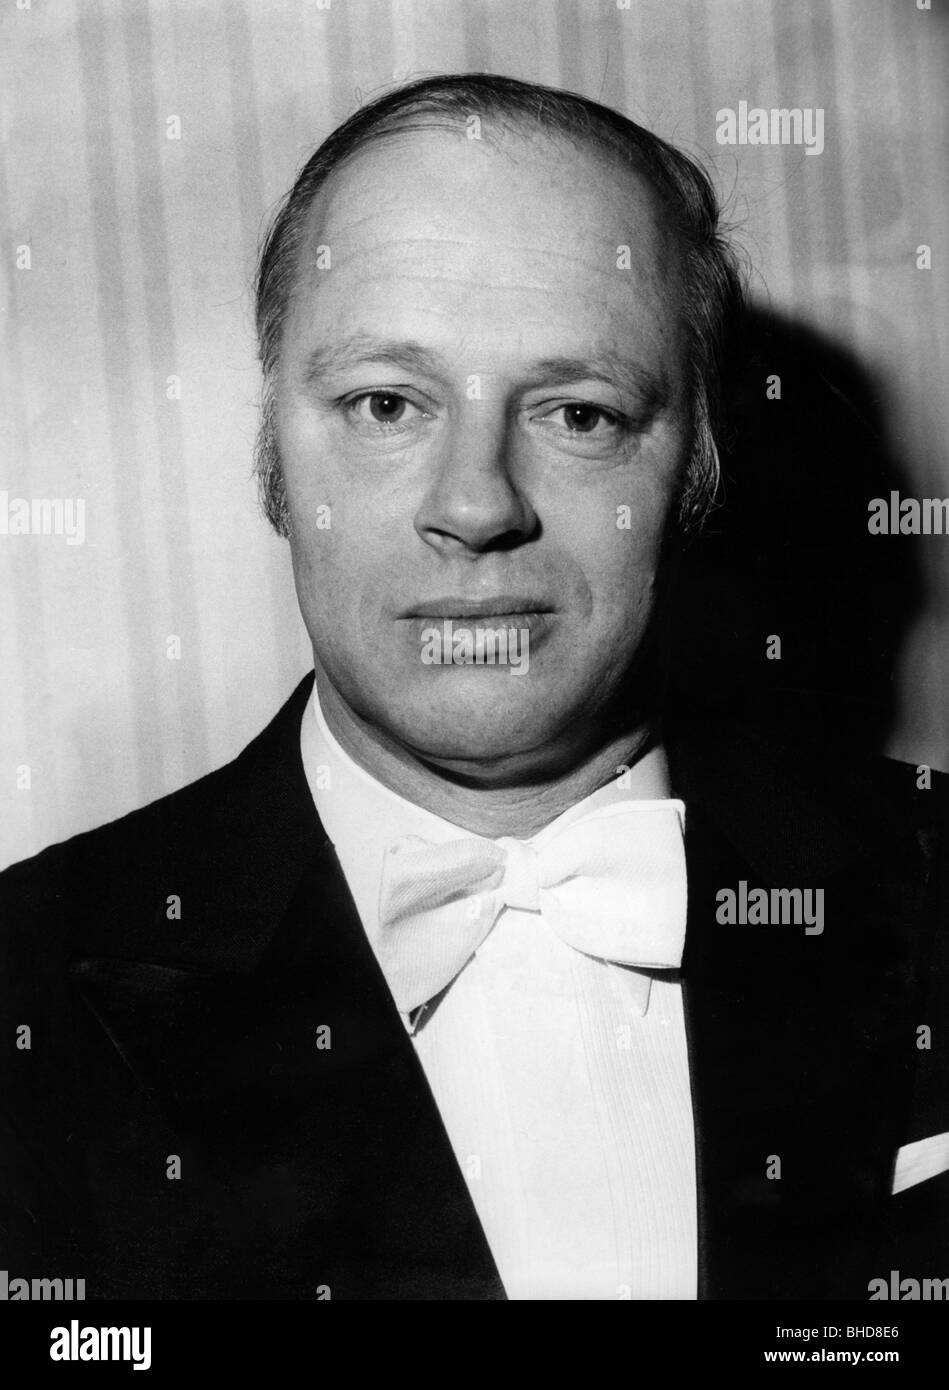 Haitink, Bernard, * 4.3.1929, chef d'orchestre néerlandais, portrait, Banque D'Images